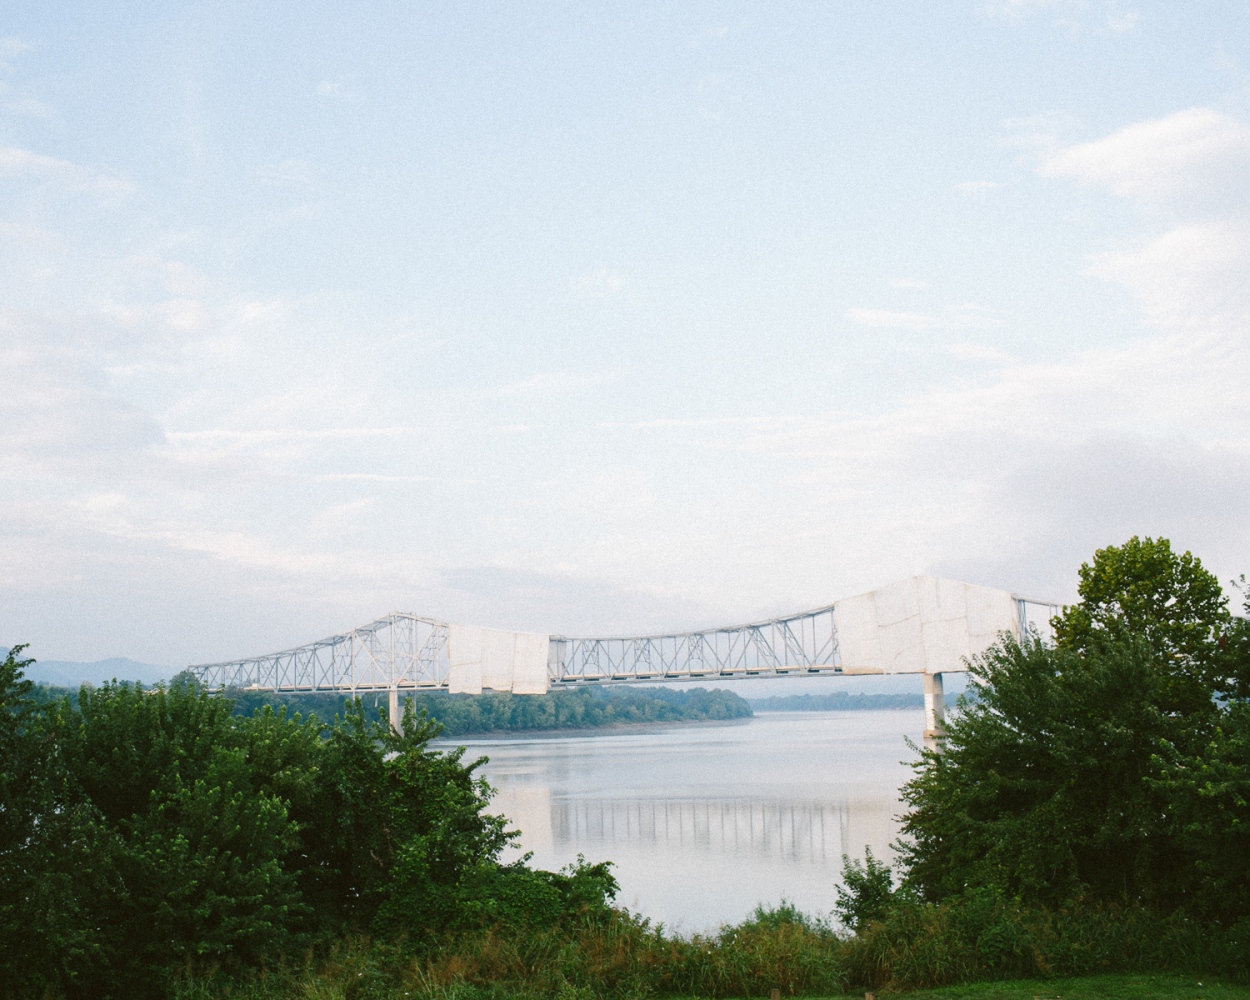  Perkins Bridge spanning the Ohio River. 